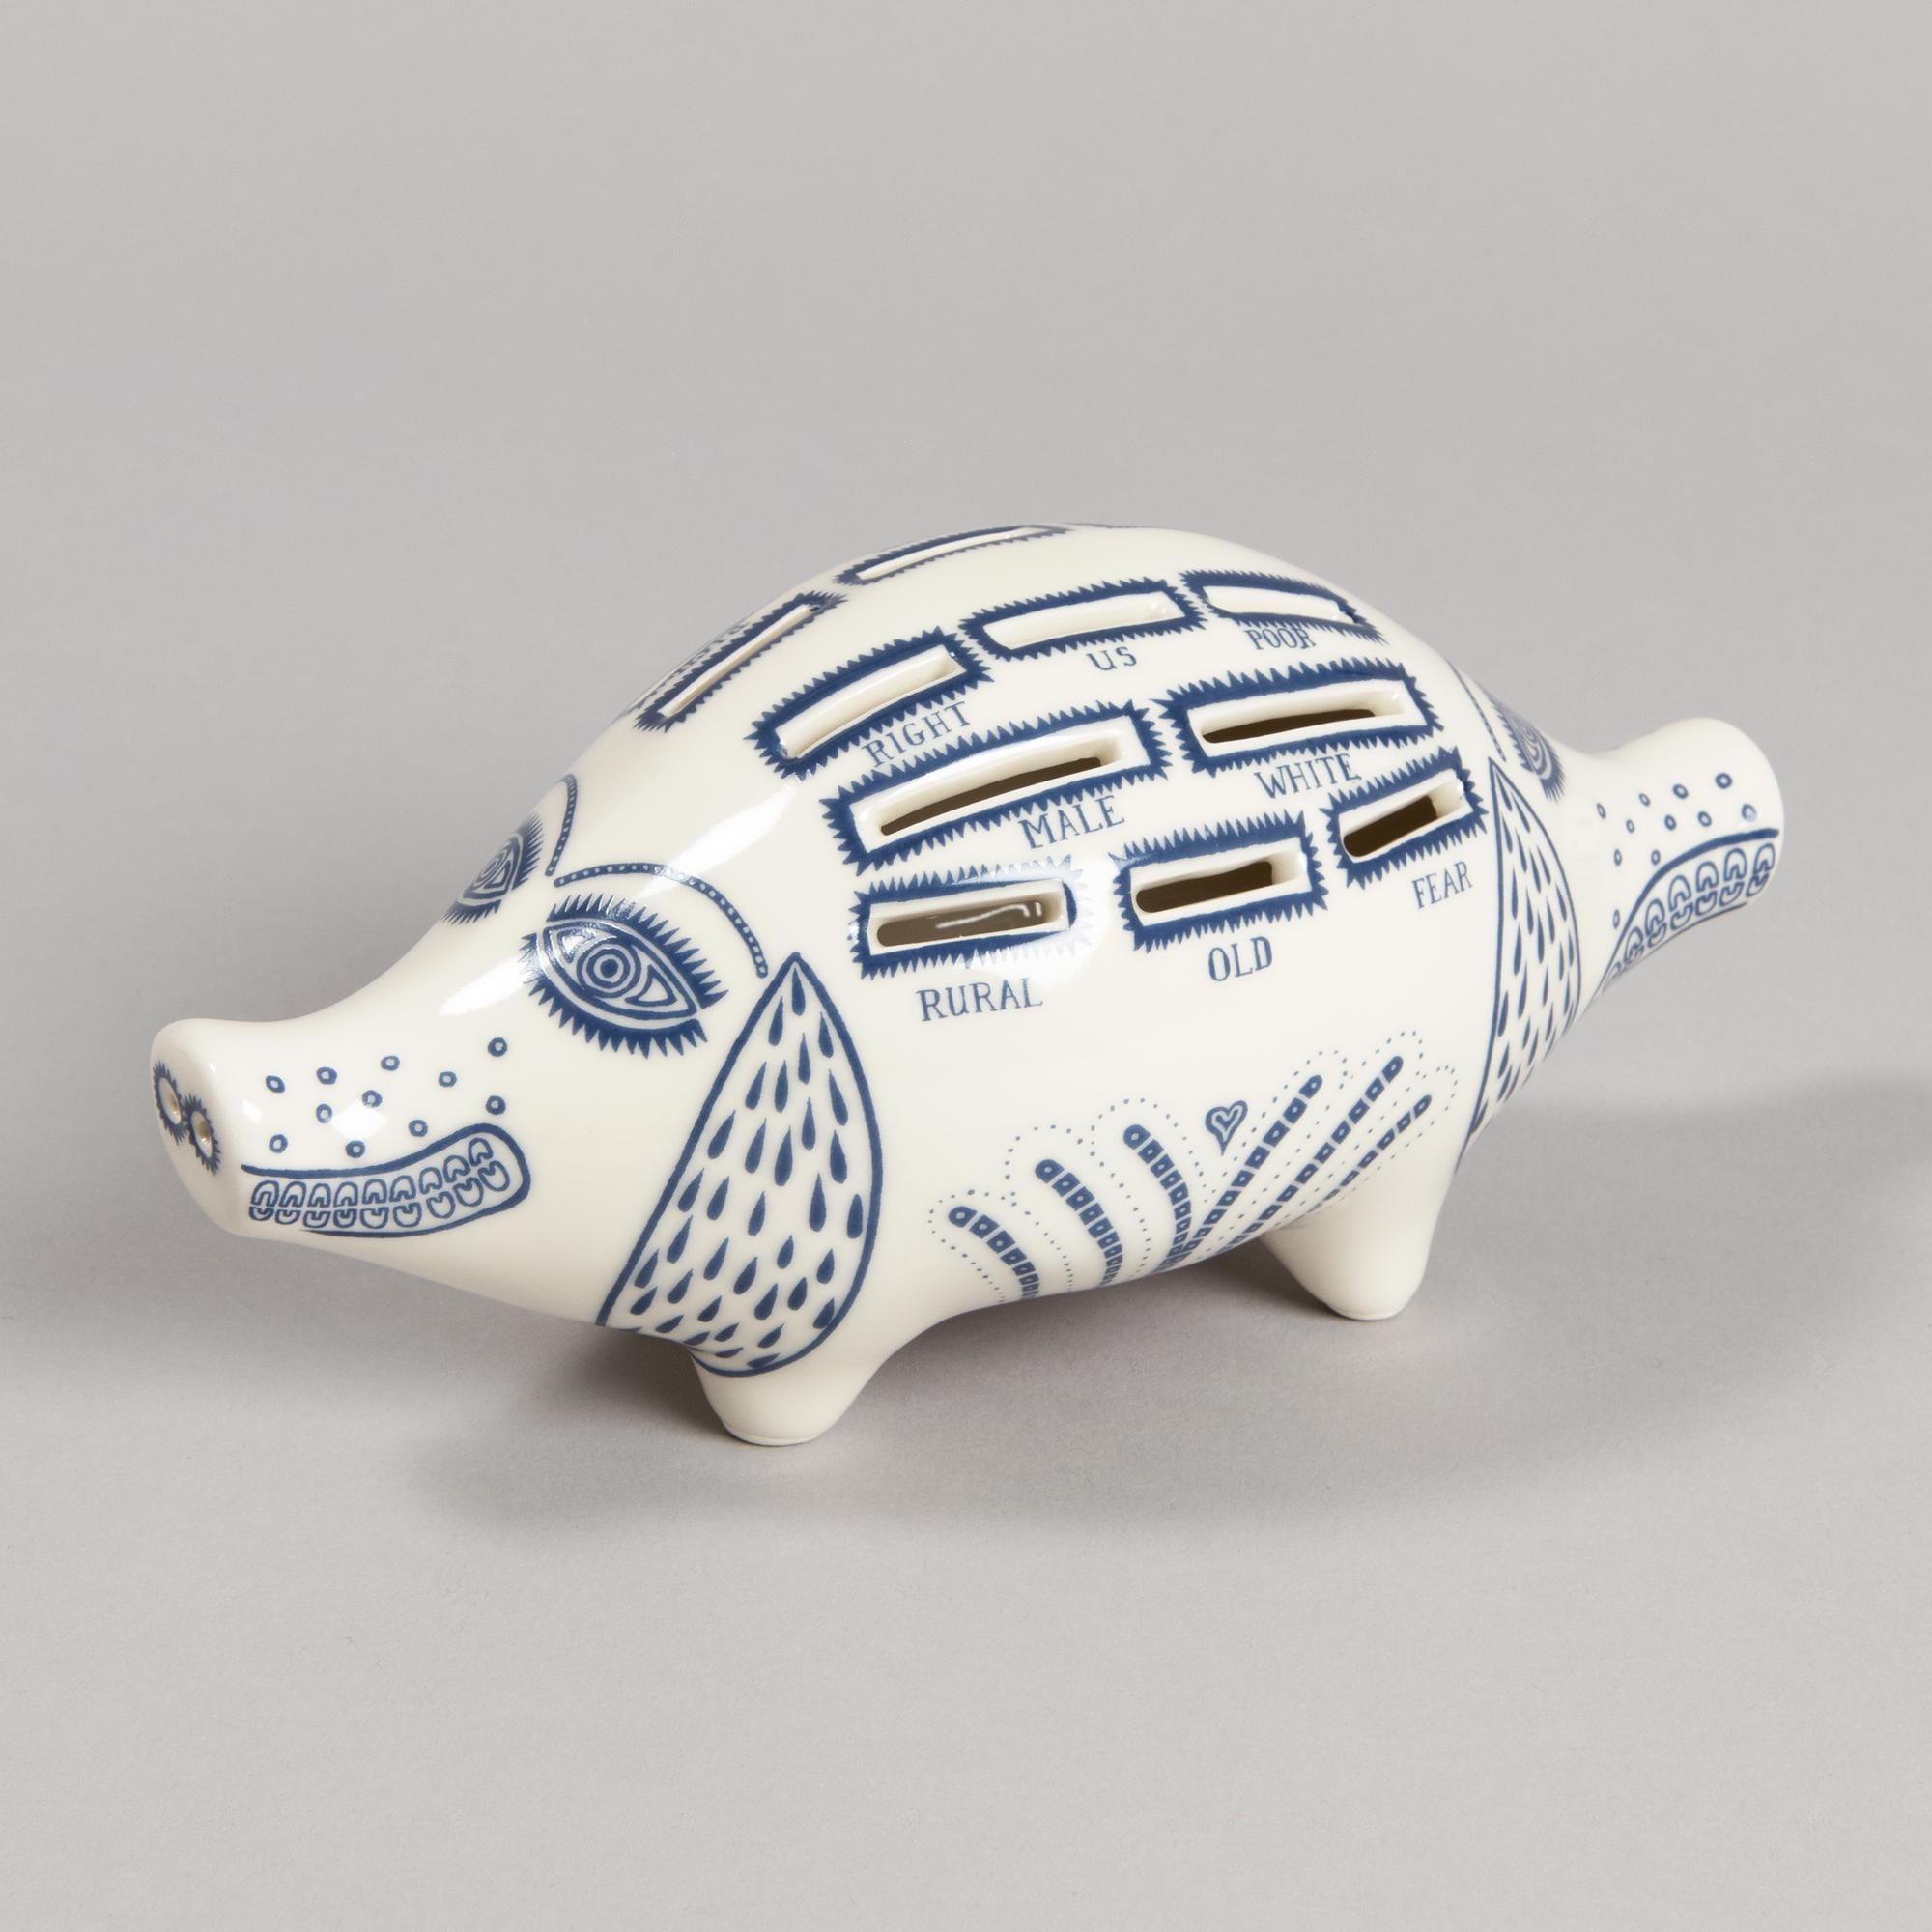 Grayson Perry, Piggy Bank – Keramik Spardose mit Schweinsledermotiv, britische Kunst 2